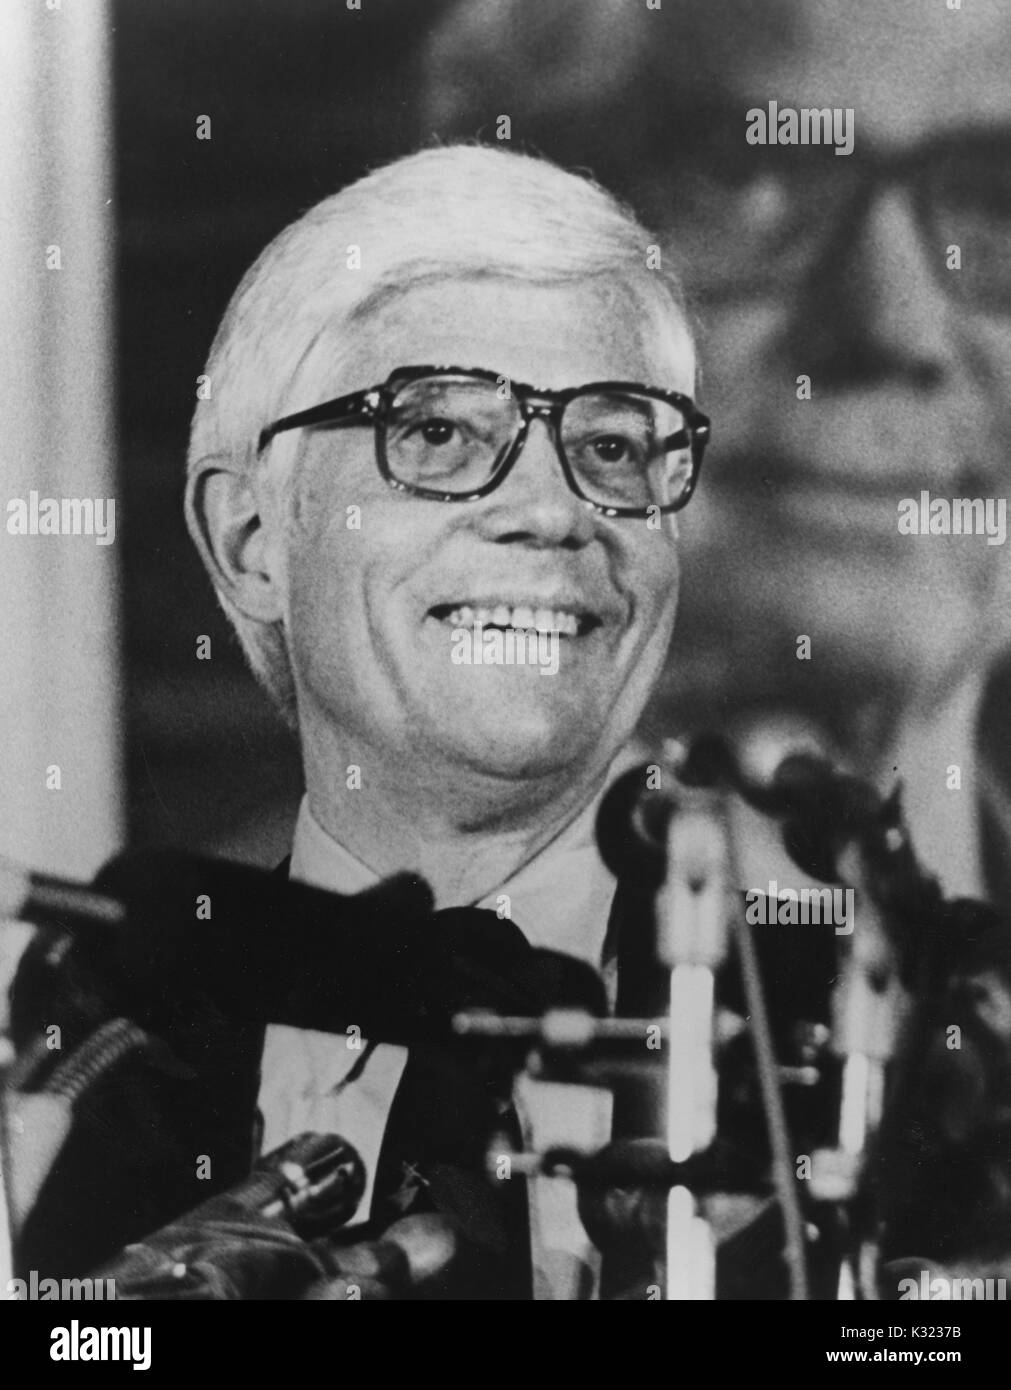 Portrait photographique de gris, des épaules, du représentant américain John B Anderson de l'Illinois, souriant à un podium avec de nombreux microphones en face de lui, dans la participation à la Milton Eisenhower S Symposium, un programme annuel de conférenciers à l'Université Johns Hopkins, Baltimore, Maryland, 1980. Banque D'Images